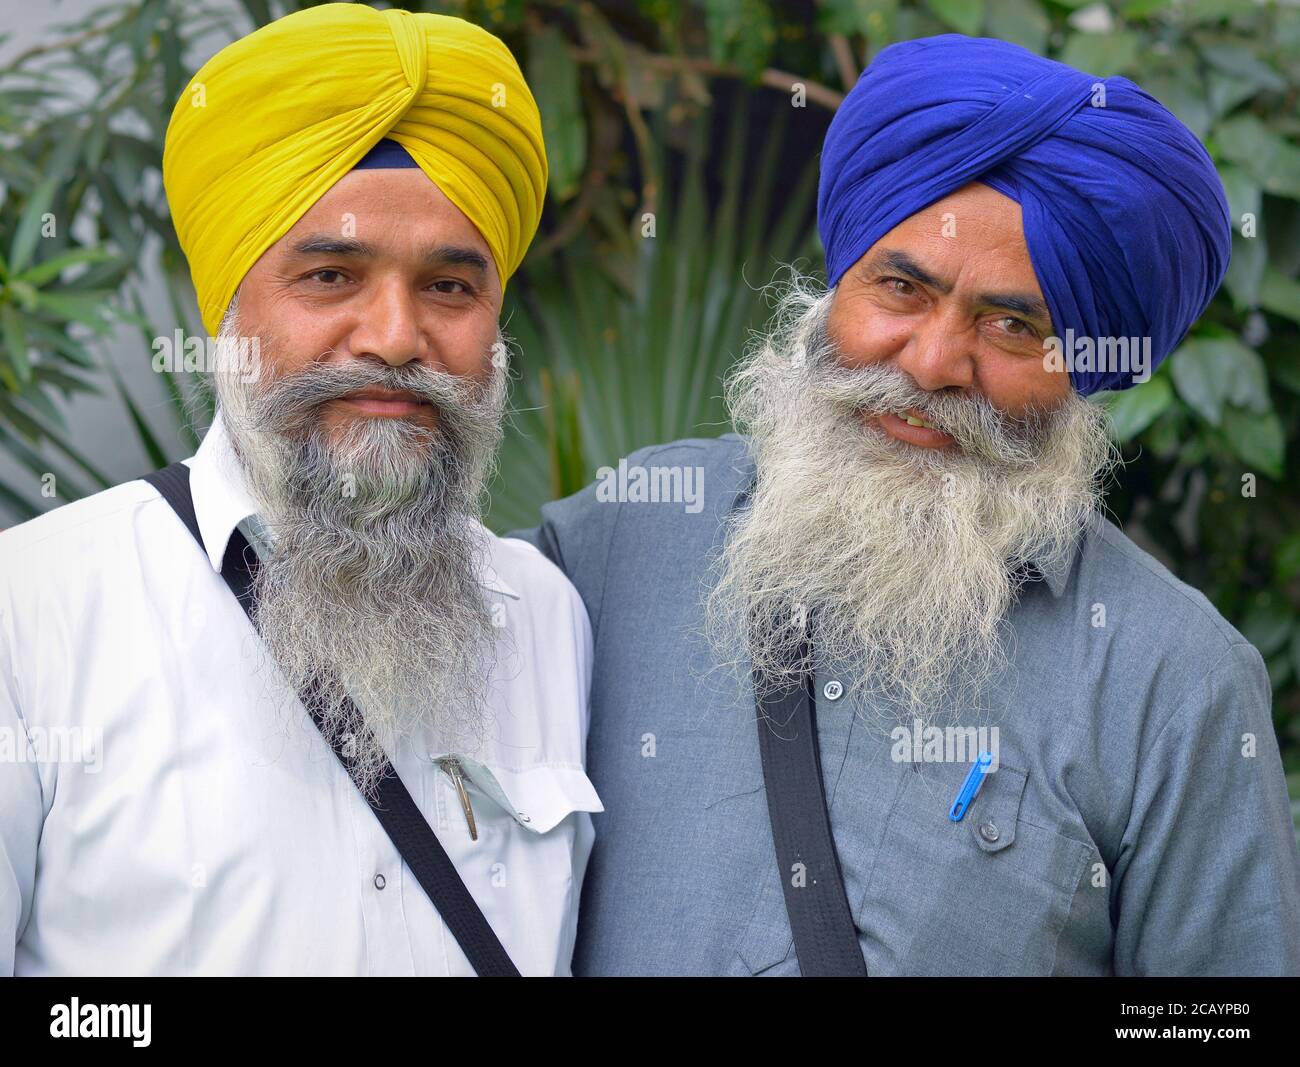 Zwei ältere indische Sikh-Männer mit bunten Turbanen posieren für die Kamera. Stockfoto